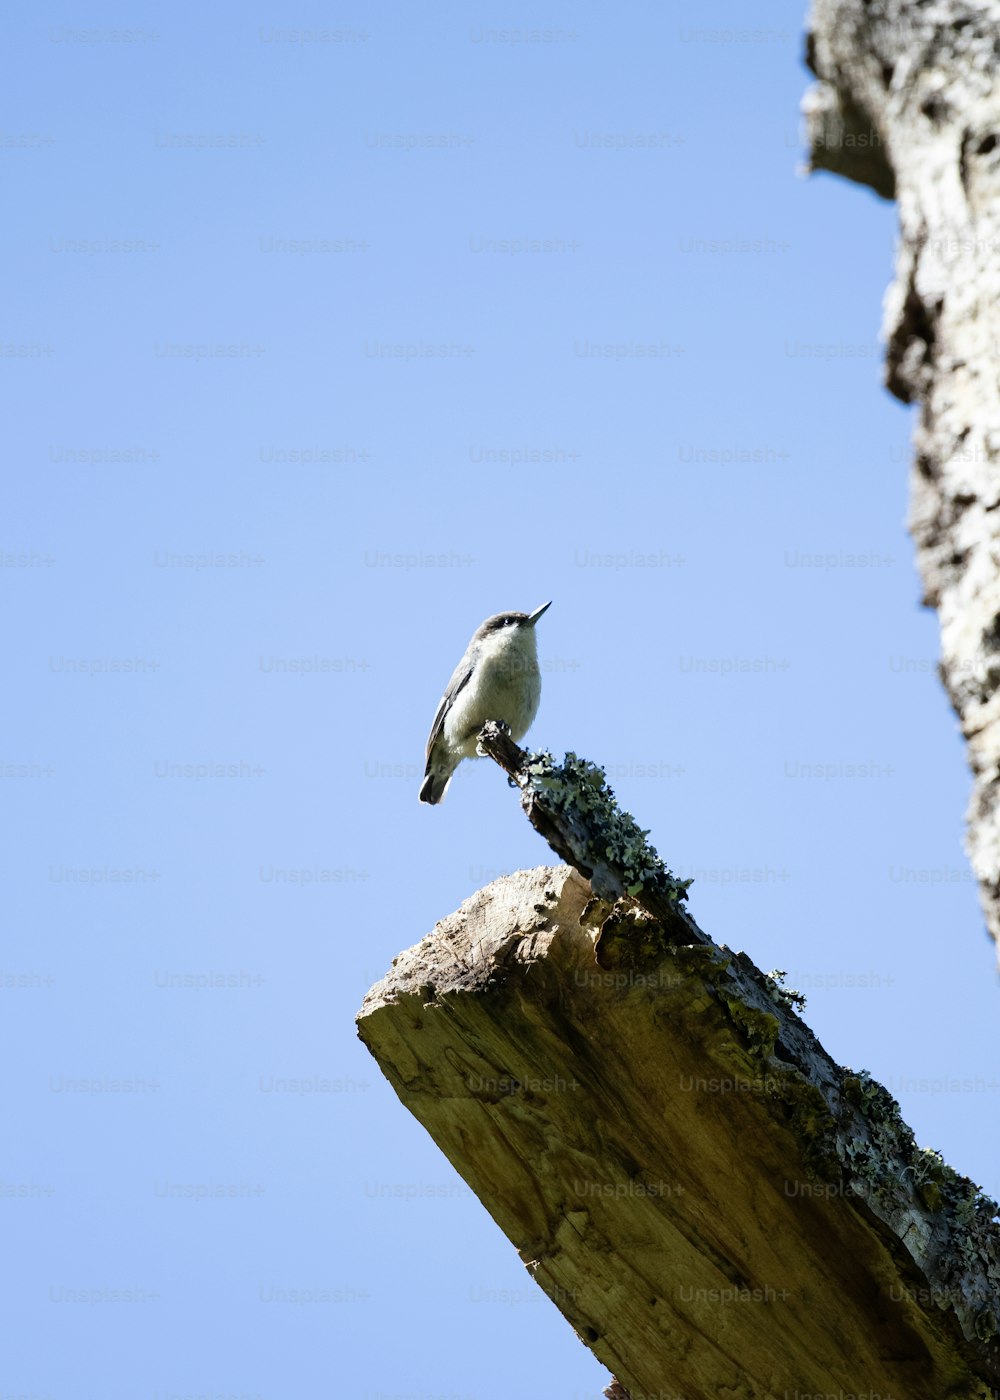 Un pequeño pájaro encaramado en un trozo de madera